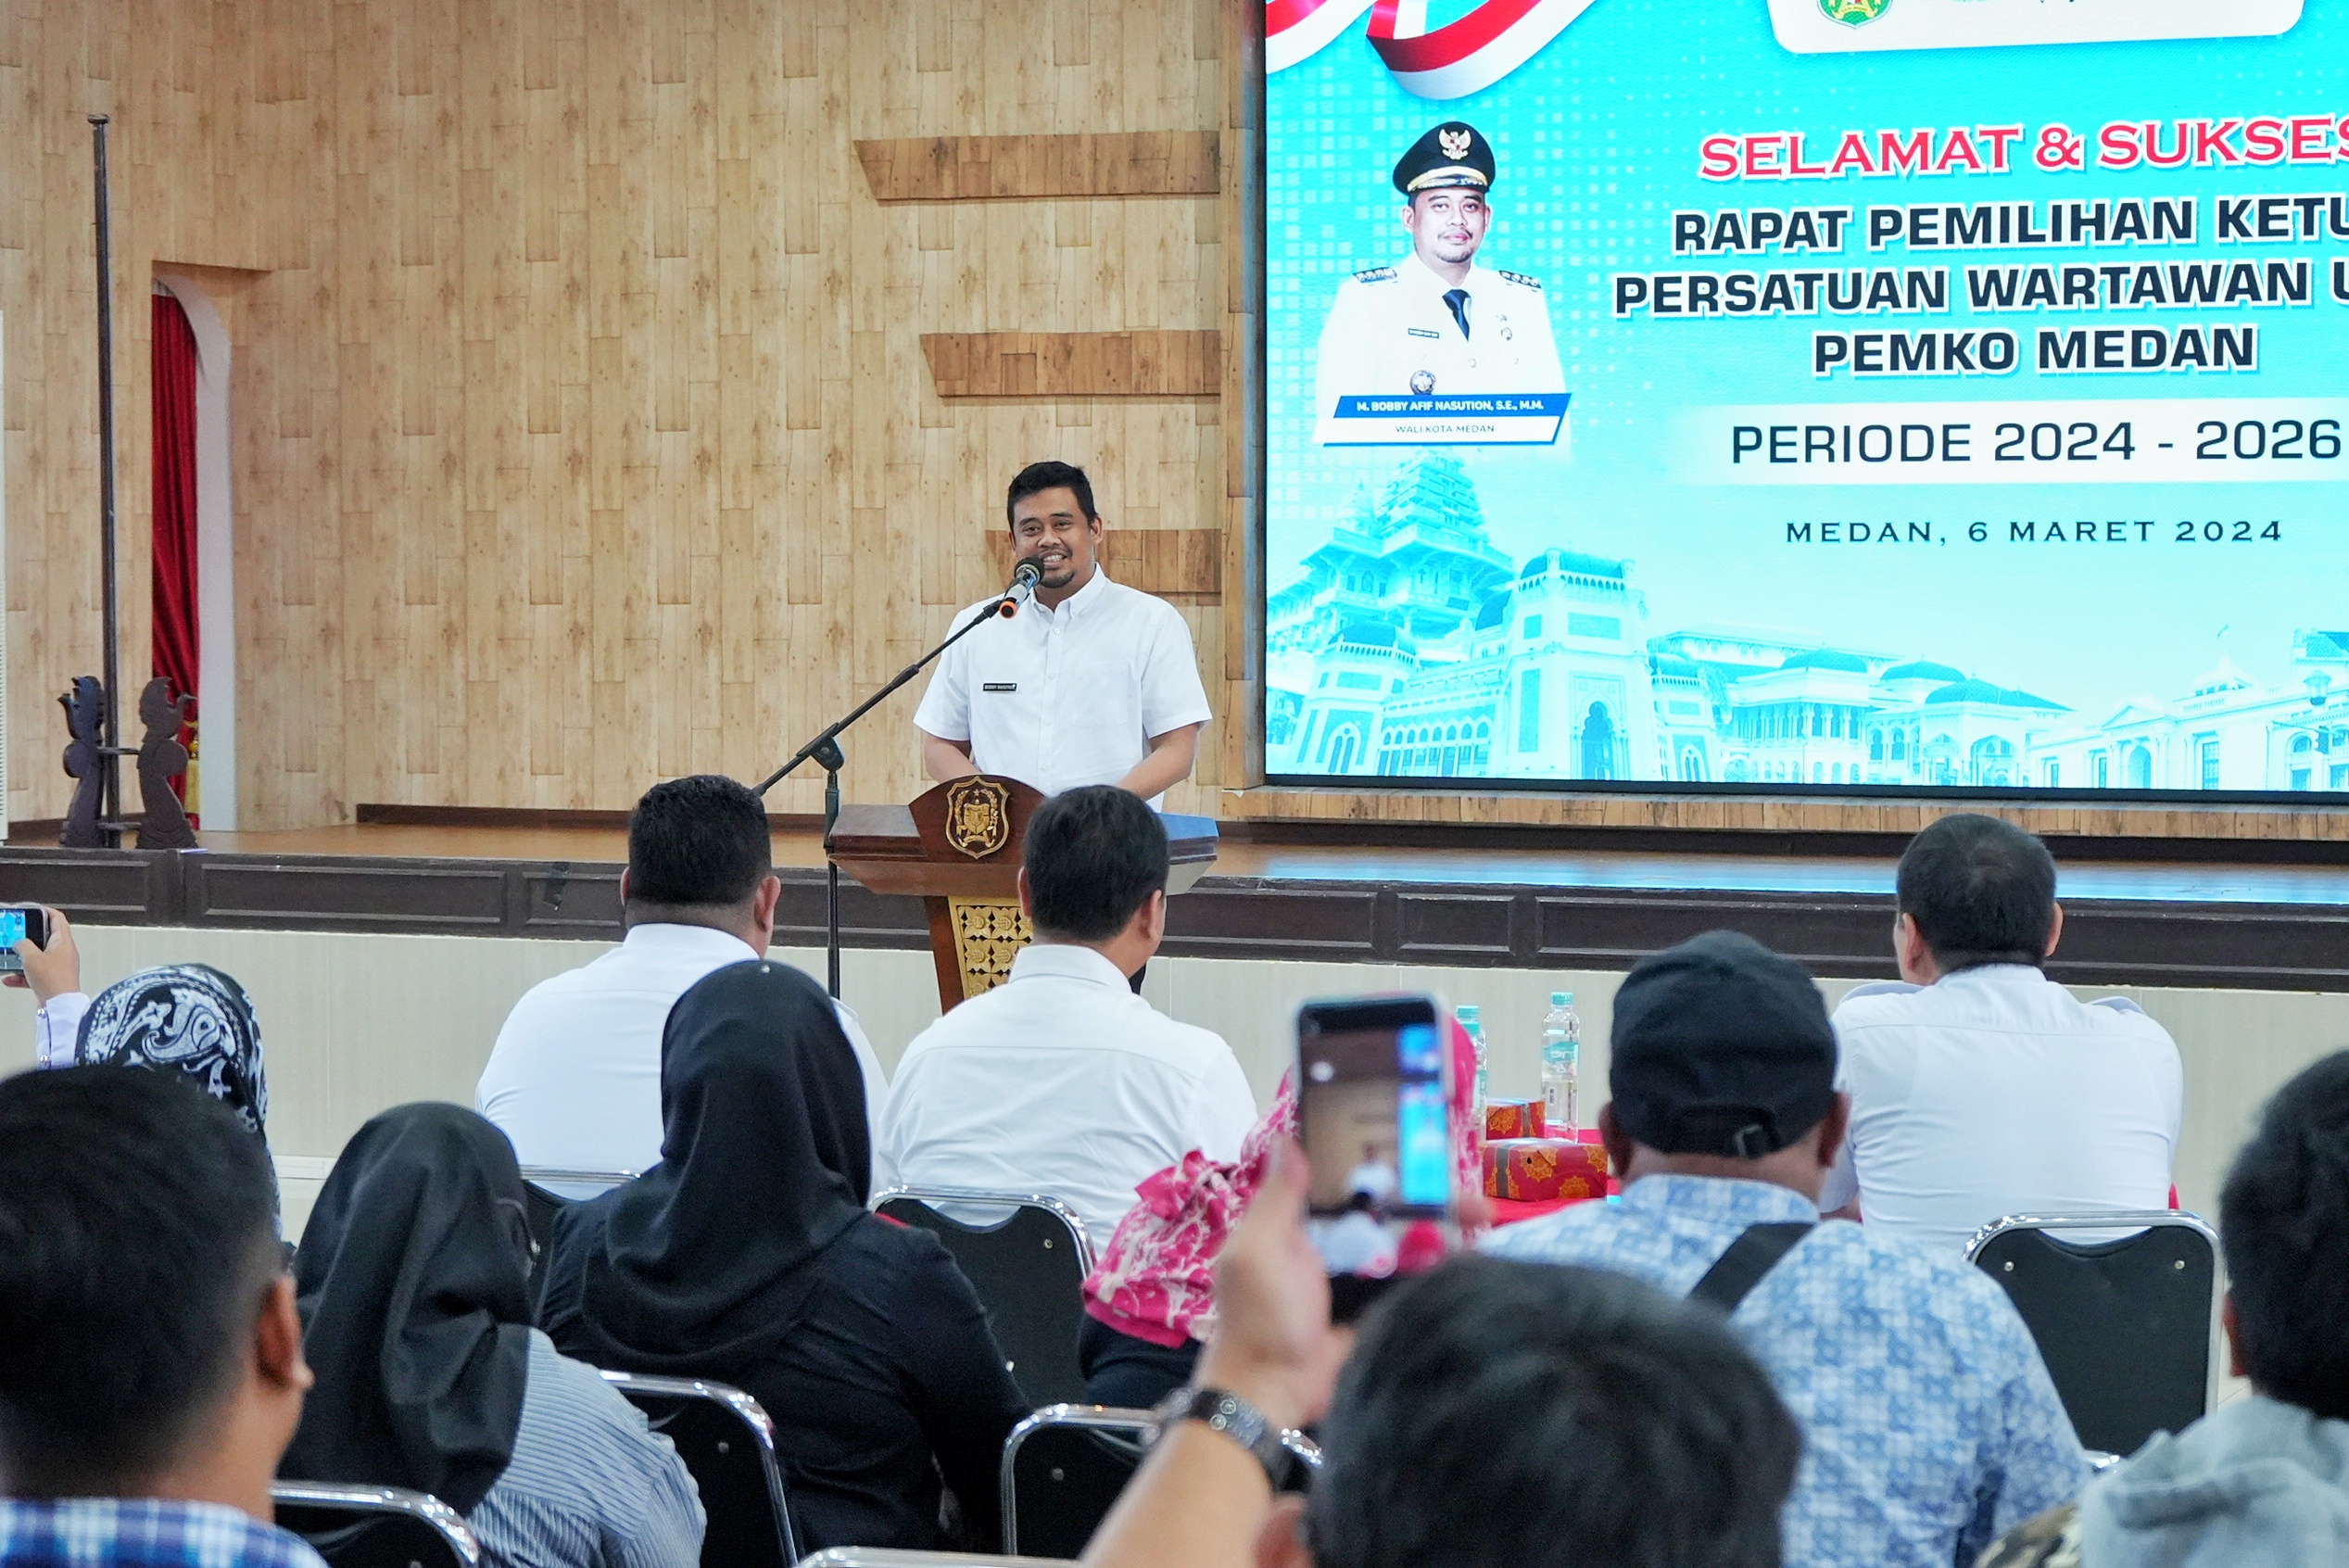 Hadiri Pemilihan Ketua Persatuan Wartawan Unit Pemko Medan, Wali Kota Medan Ingin Ketua Terpilih Bisa Mencerdaskan Masyarakat Melalui Informasi Akurat